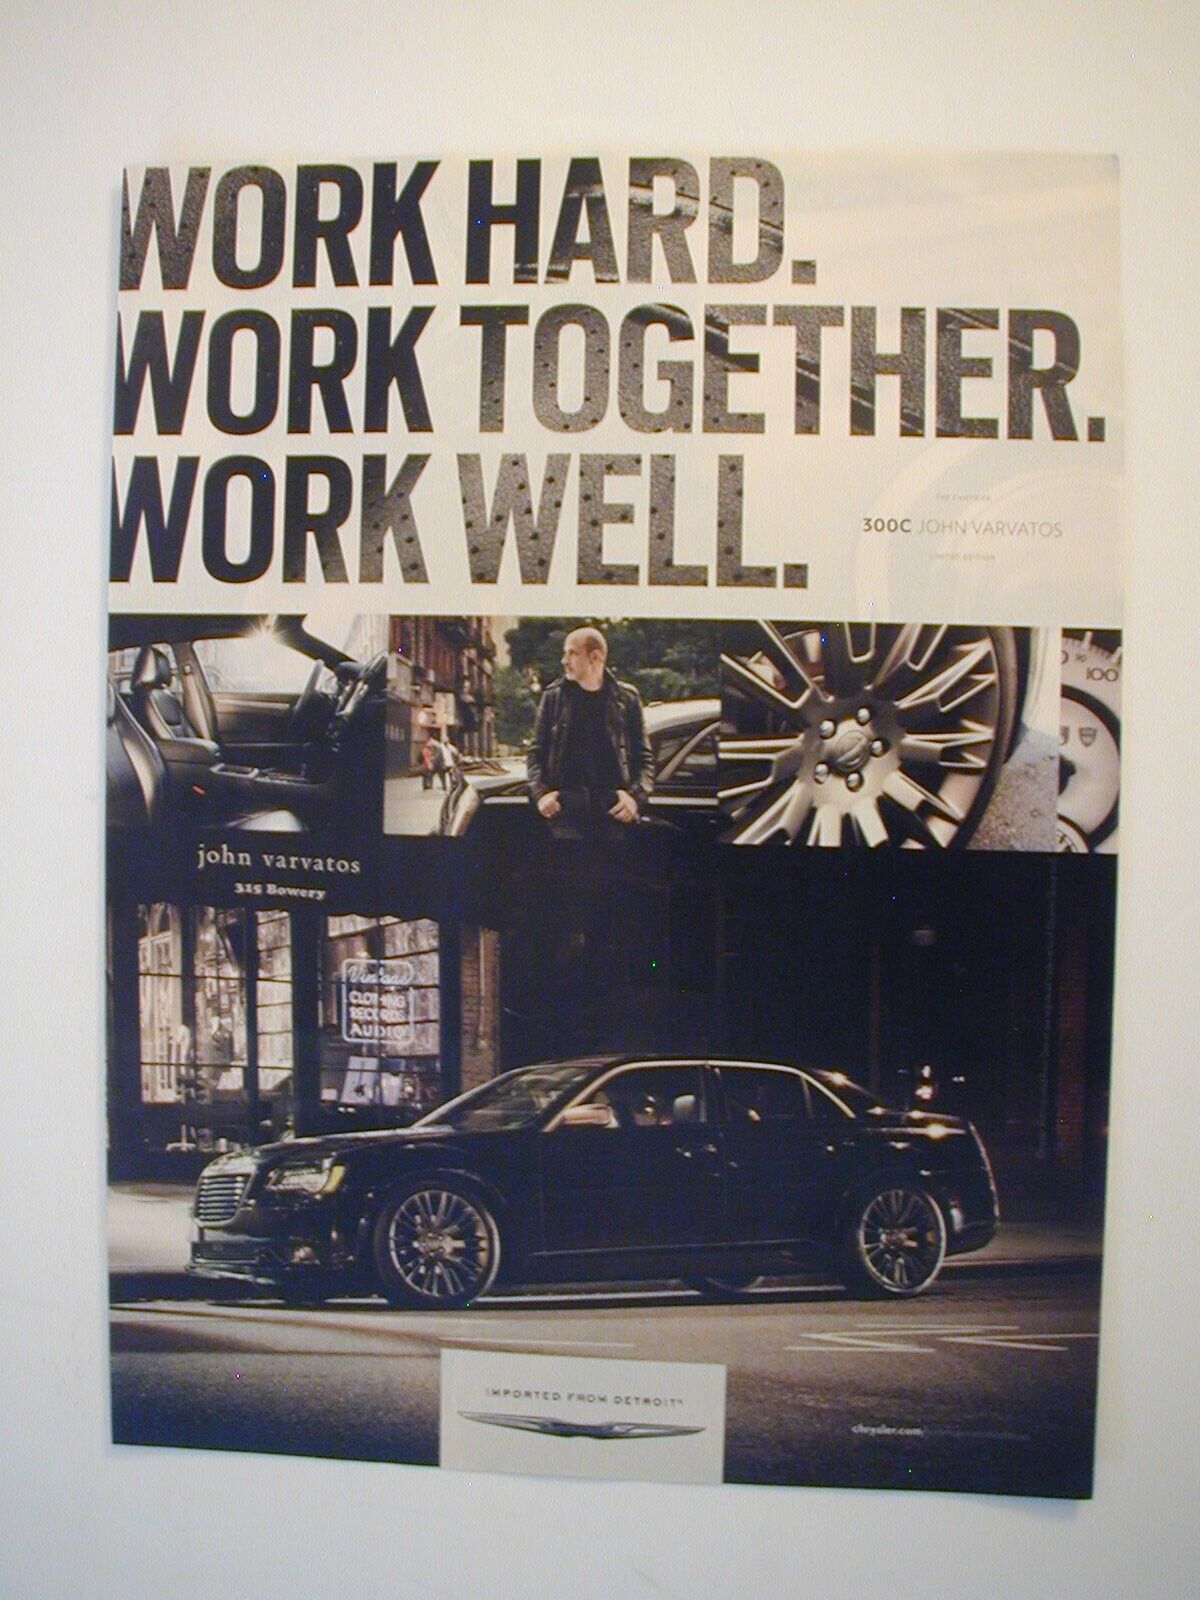 2013 Chrysler 300C John Varvatos  Work Hard Work Together, Work Well PRINT AD 59